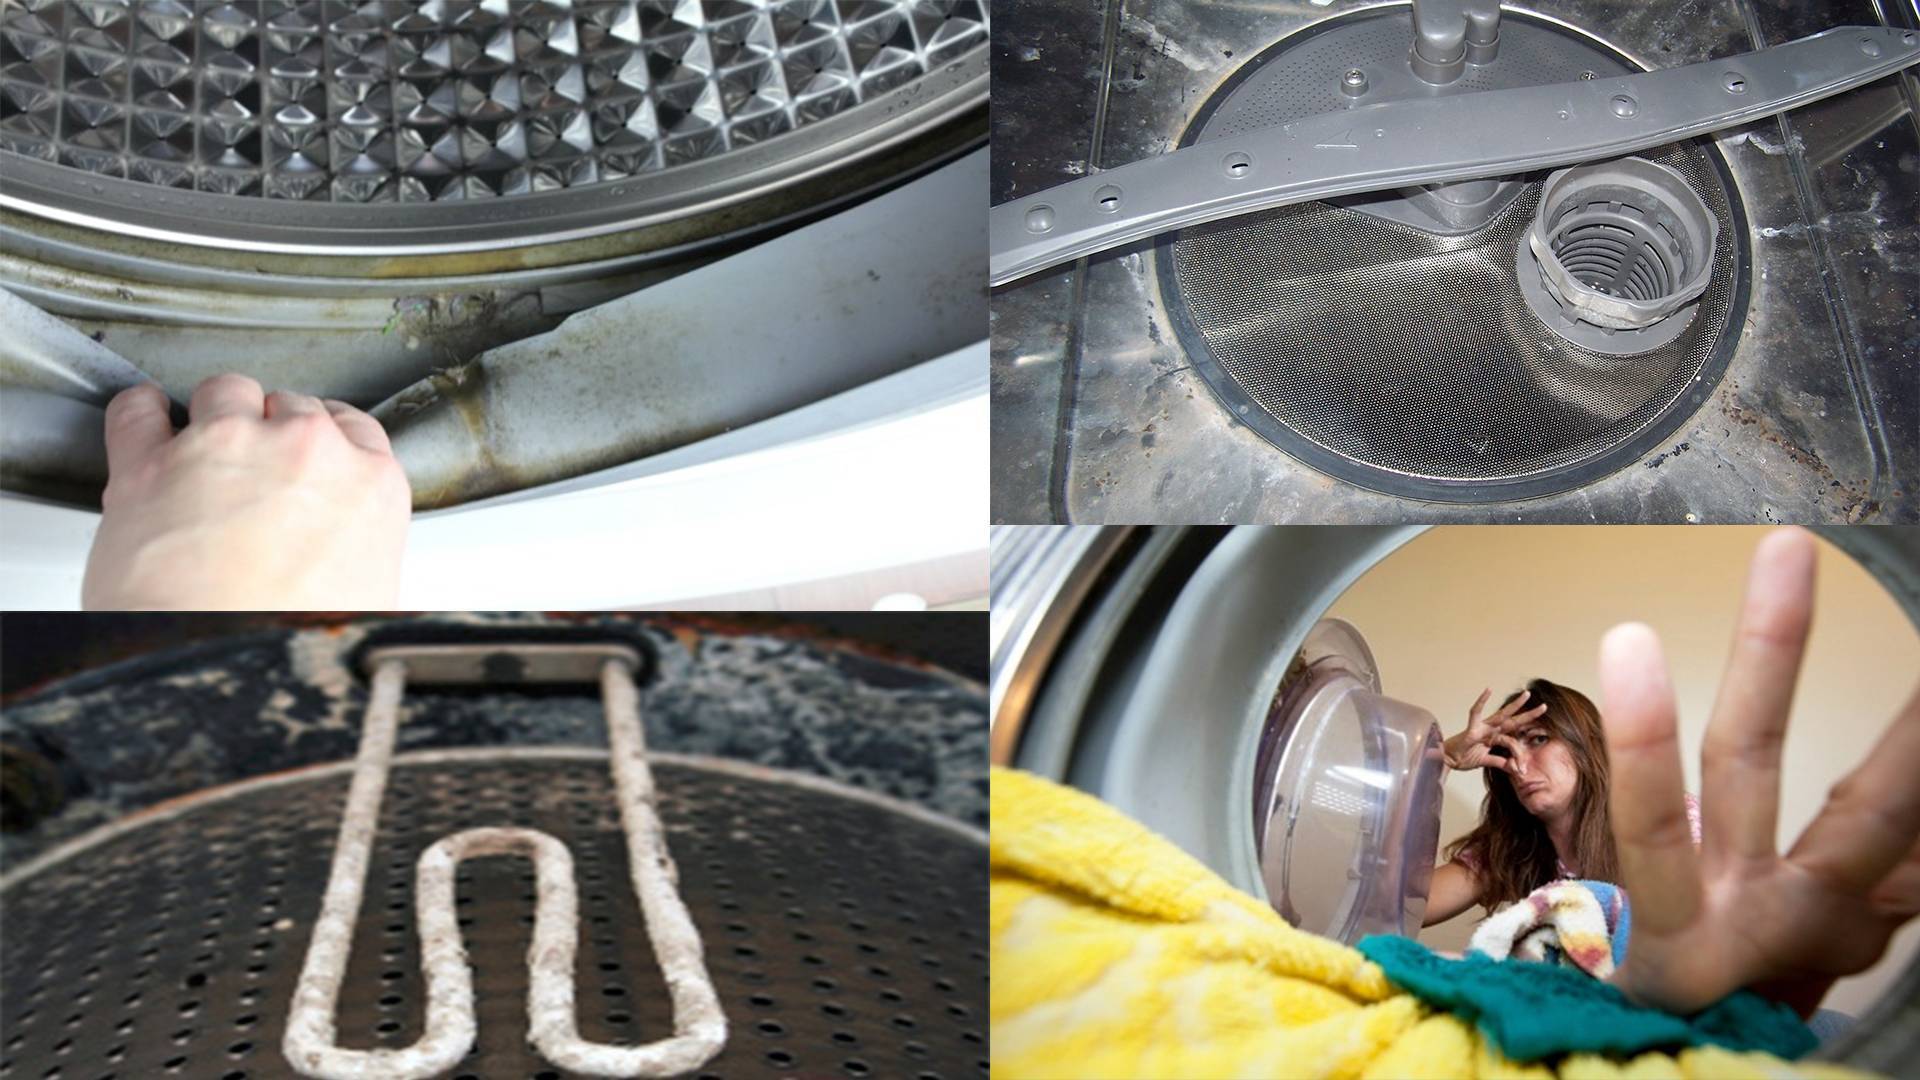 Как убрать неприятный запах из стиральной машины в домашних условиях